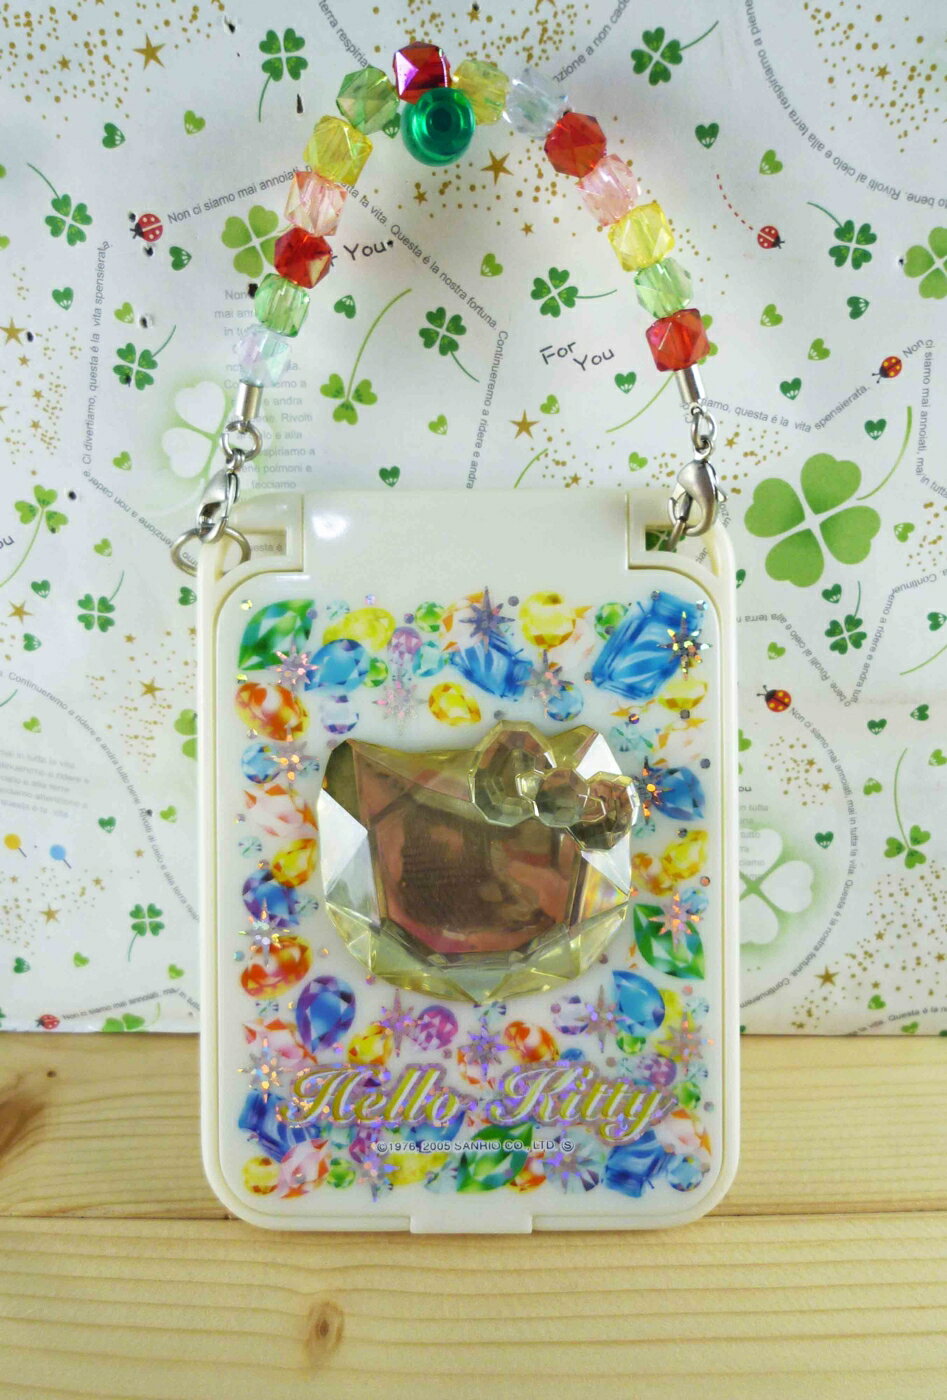 【震撼精品百貨】Hello Kitty 凱蒂貓-摺疊鏡-彩色寶石 震撼日式精品百貨